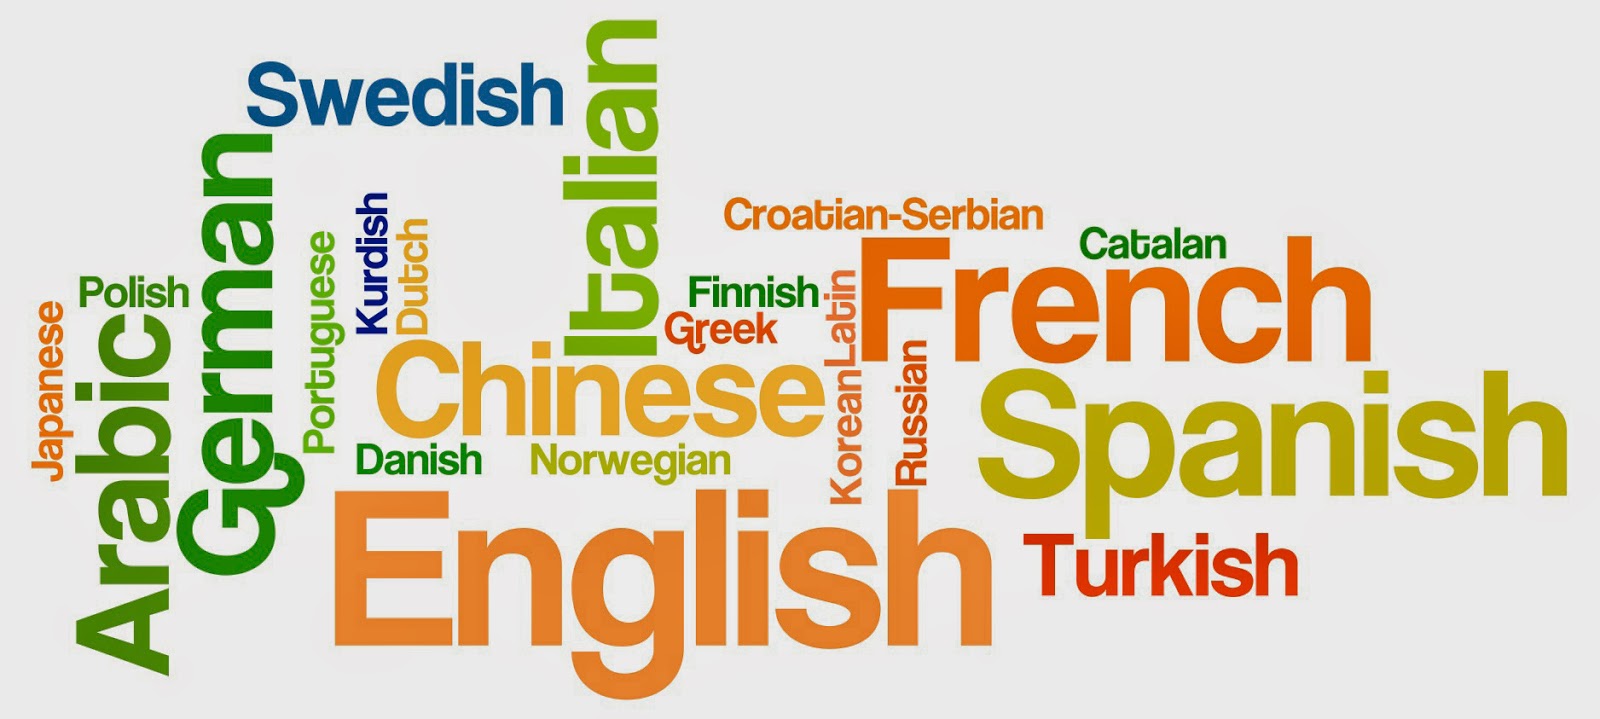 Yếu về ngoại ngữ, có nên tiếp tục ứng tuyển?